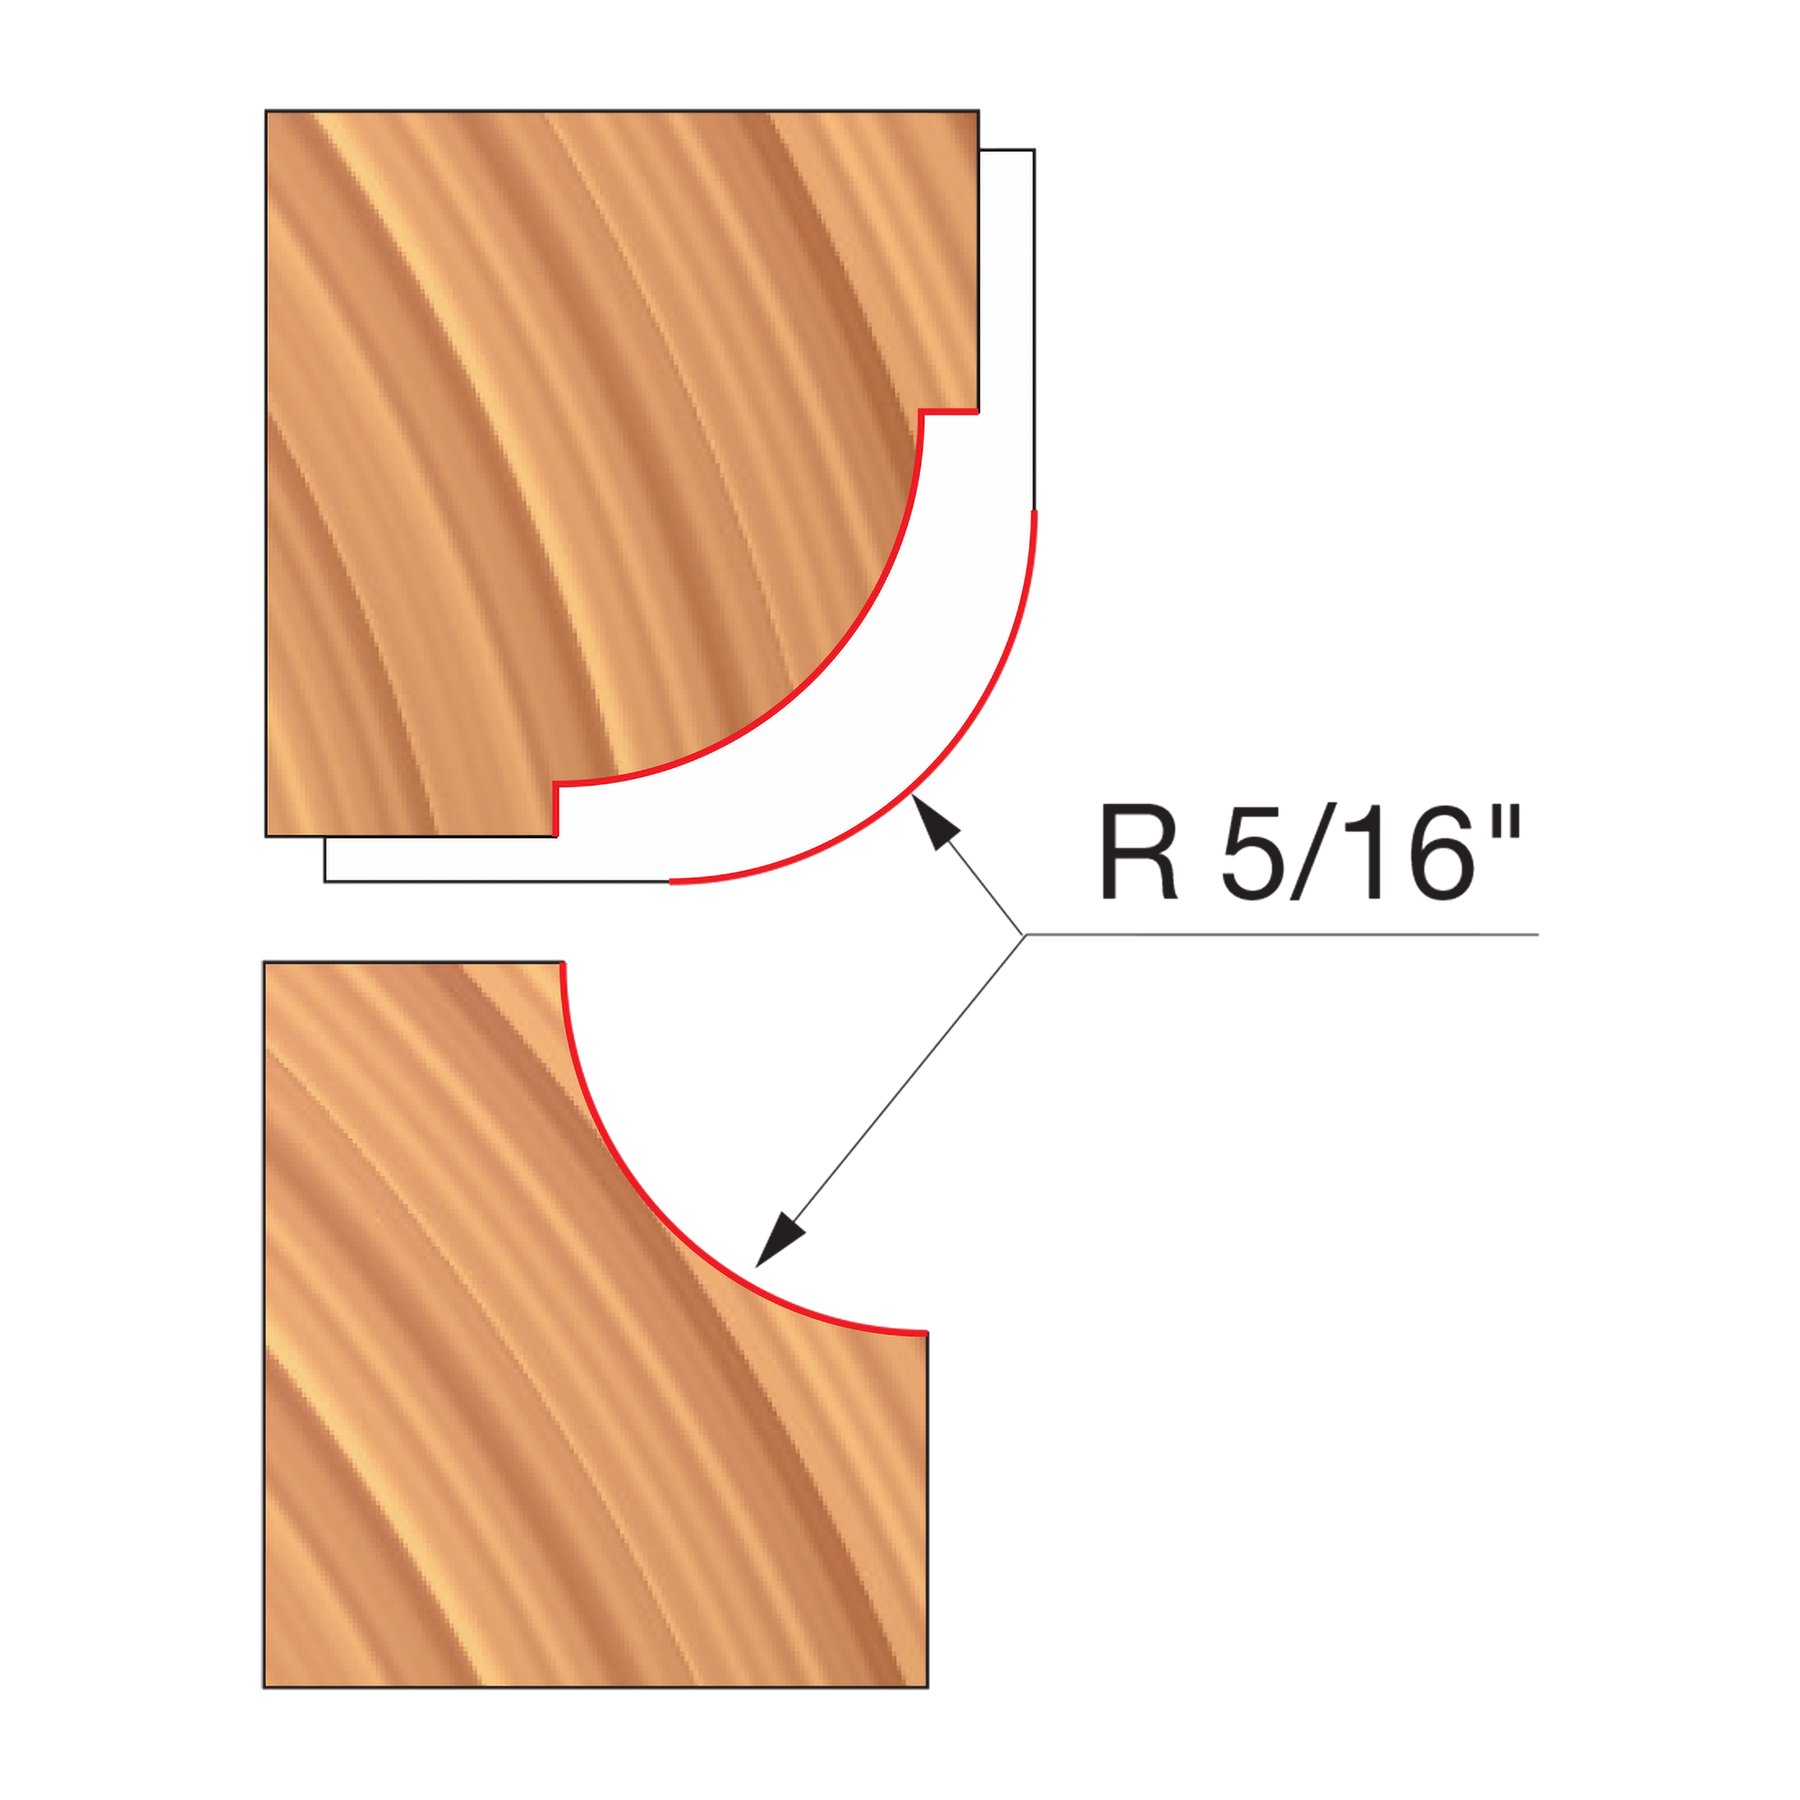 Freud Combination Convex & Concave Cutters Cutterheads